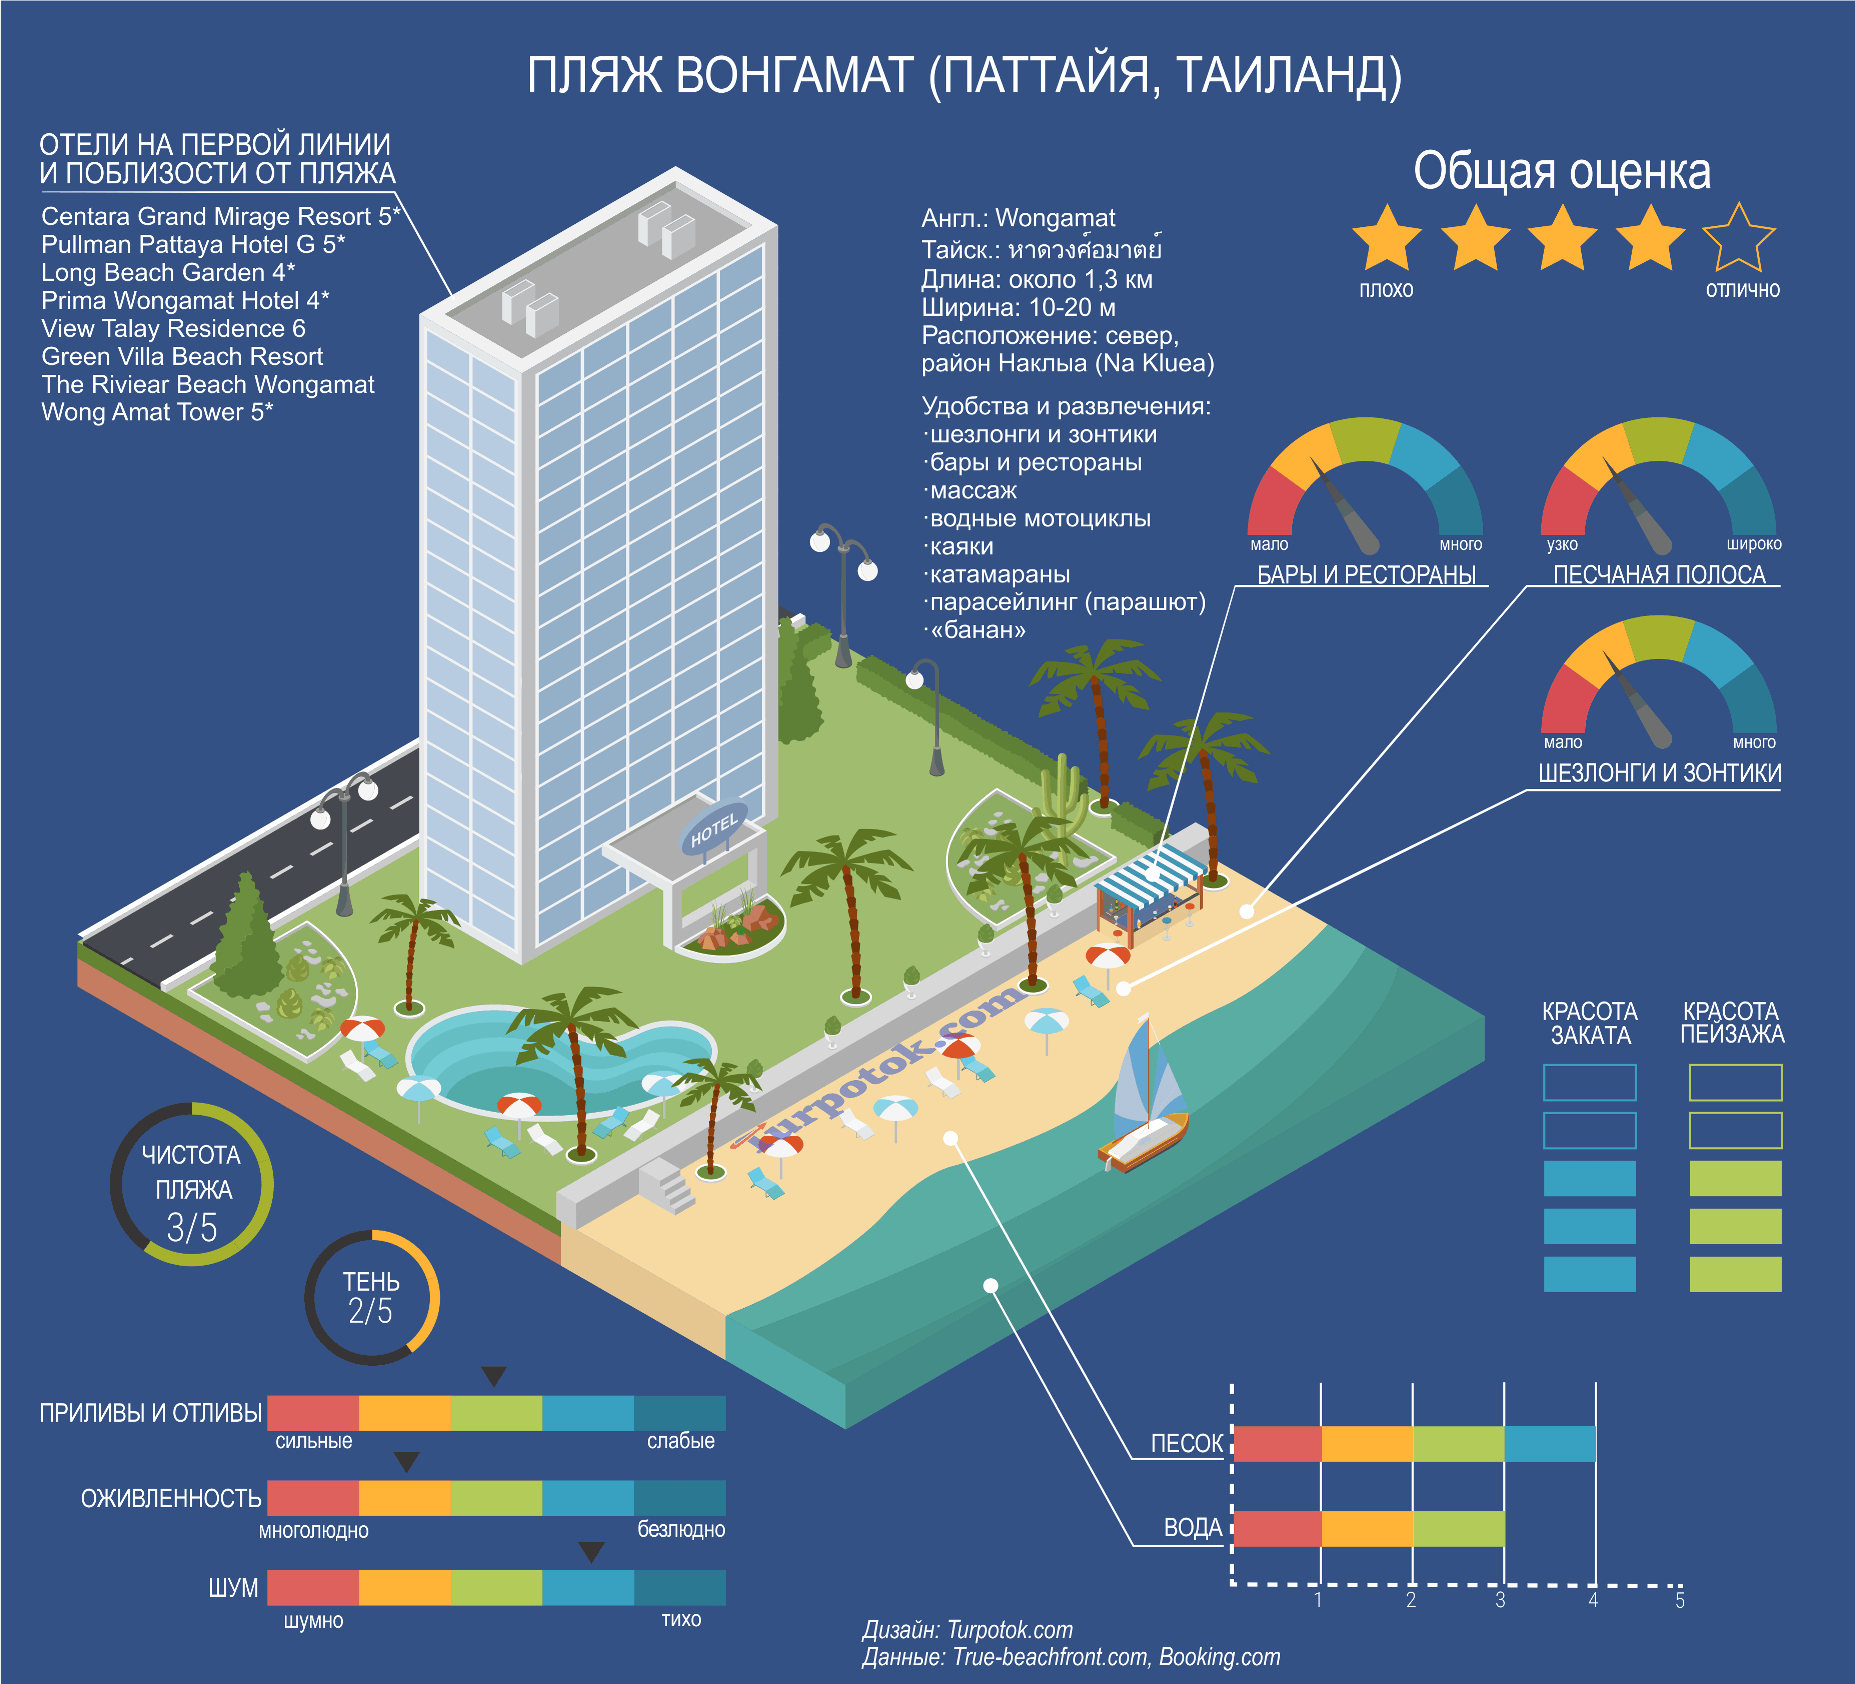 Изображение с инфографикой о пляже Вонгамат на севере Паттайи